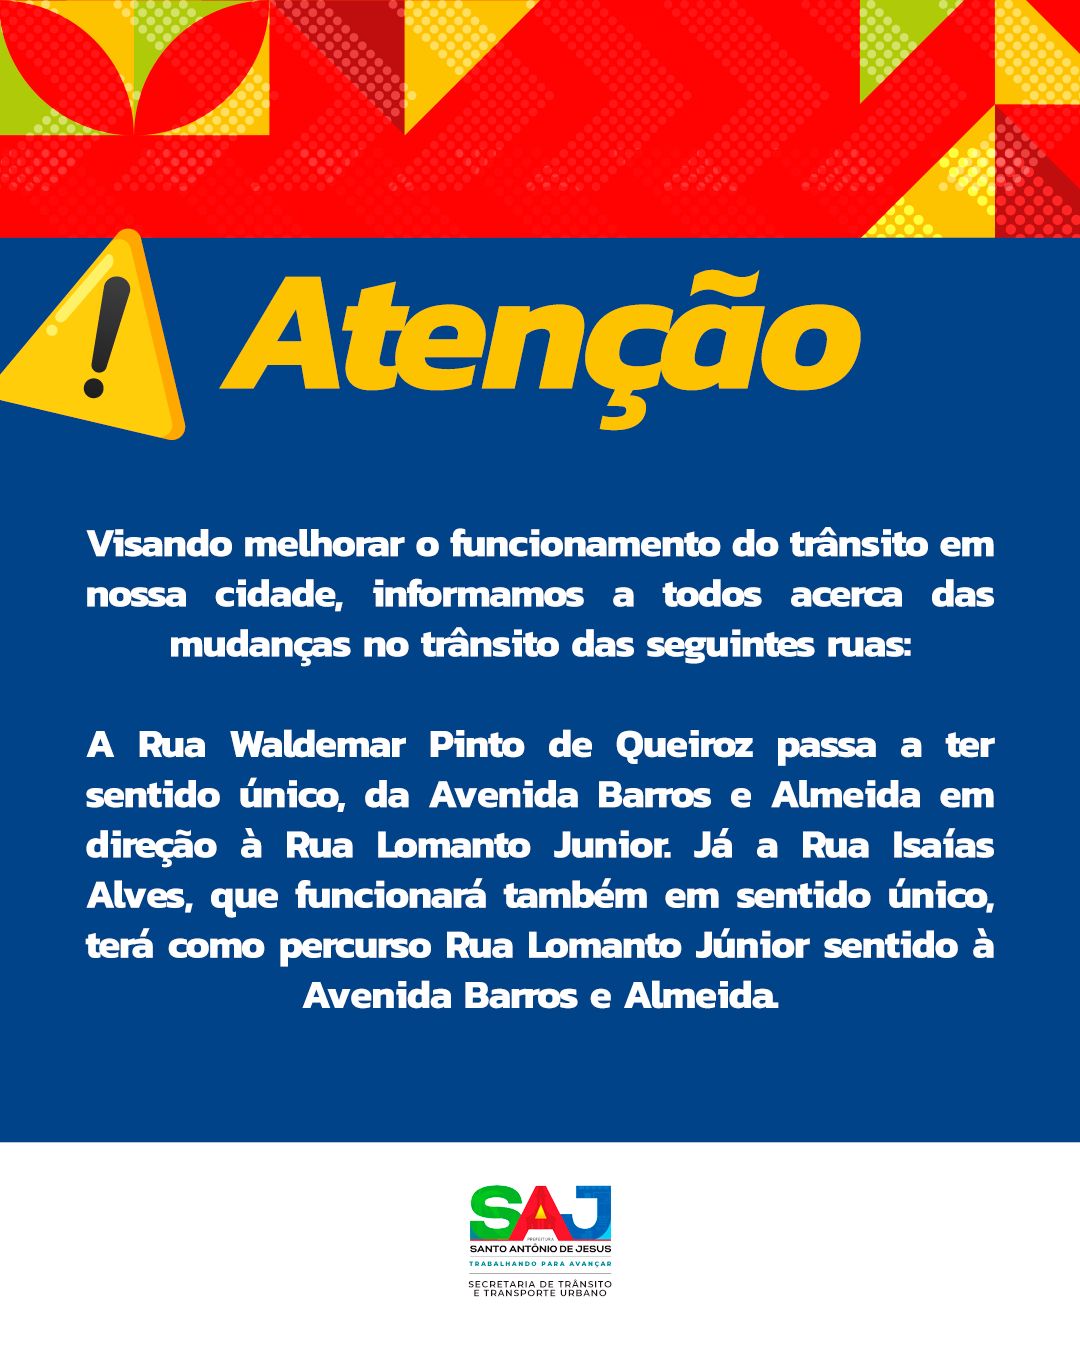 Prefeitura de Santo Antônio de Jesus informa sobre alterações no trânsito nas Ruas Waldemar Pinto de Queiroz e Isaías Alves.